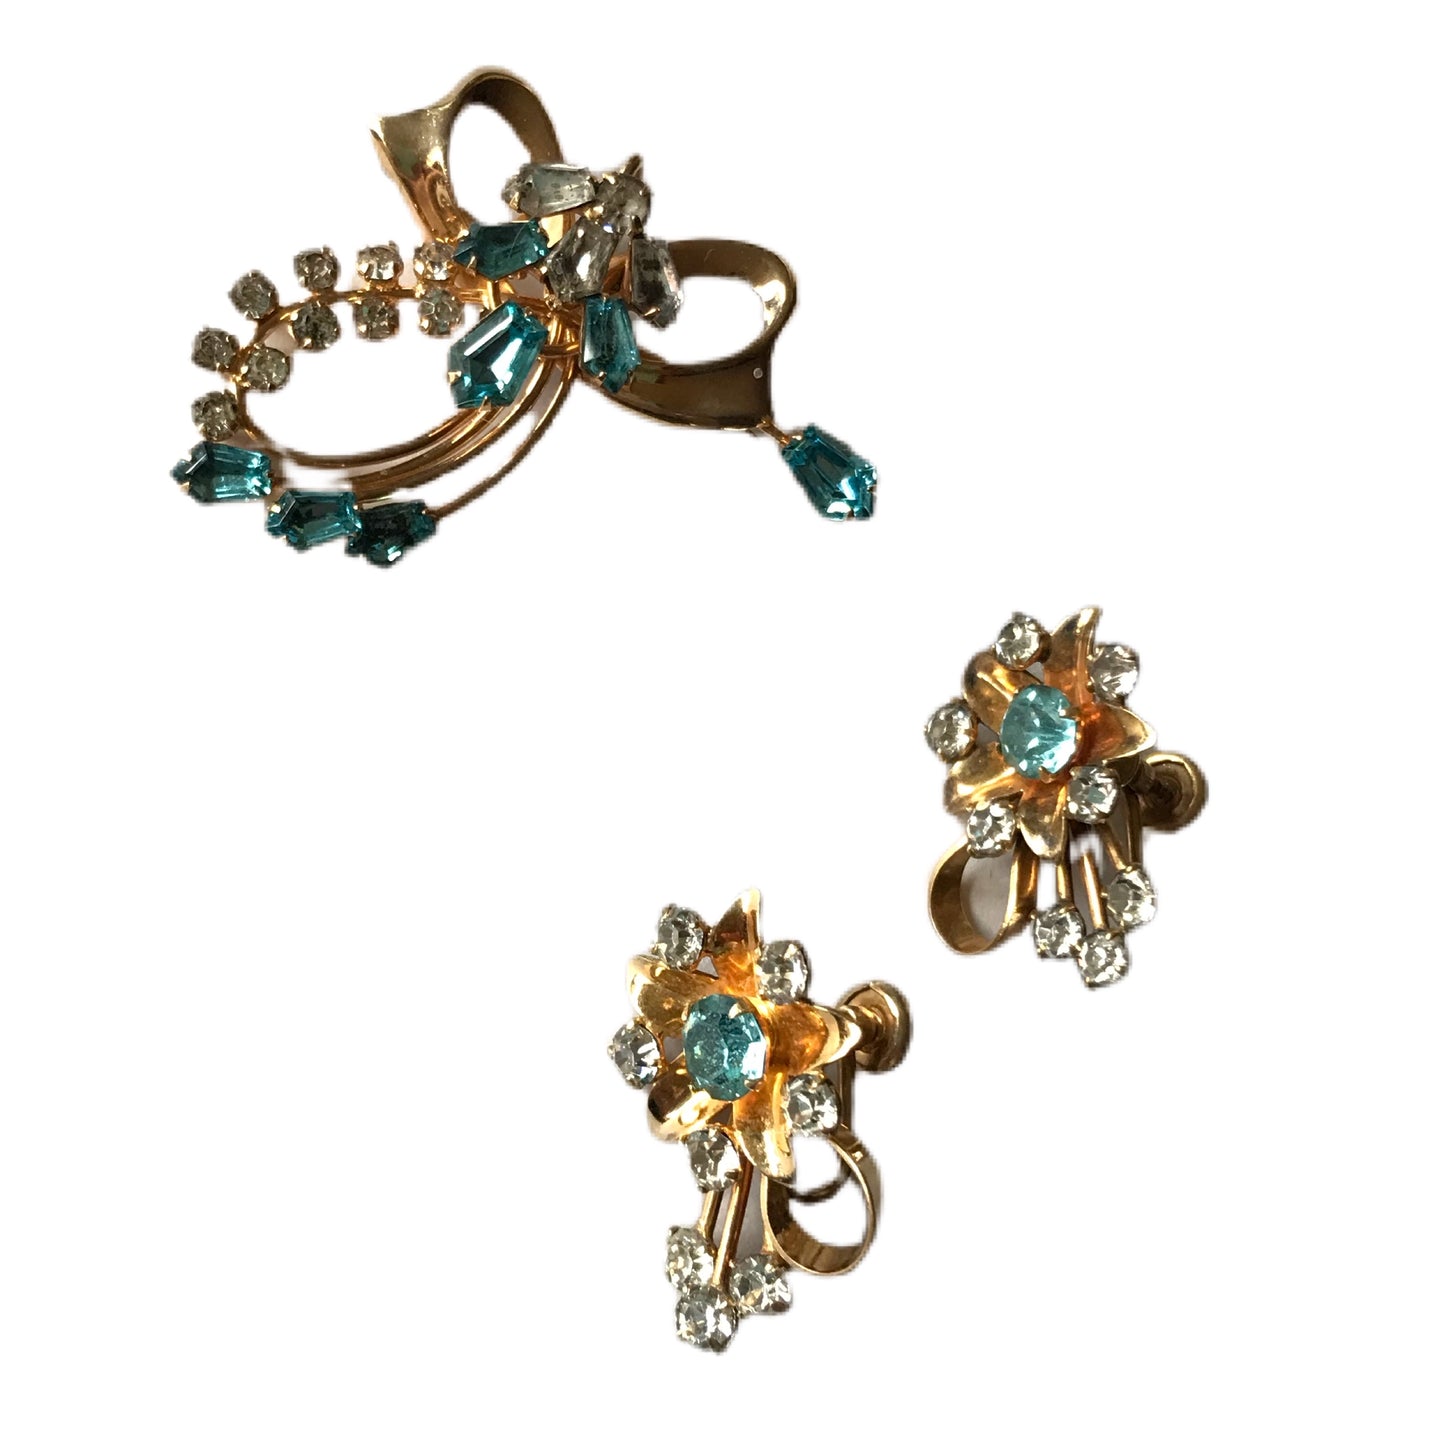 Aqua And Gold Tone Metal Floral Brooch and Screw Back Clip Earrings Demi Parure Set circa 1950s